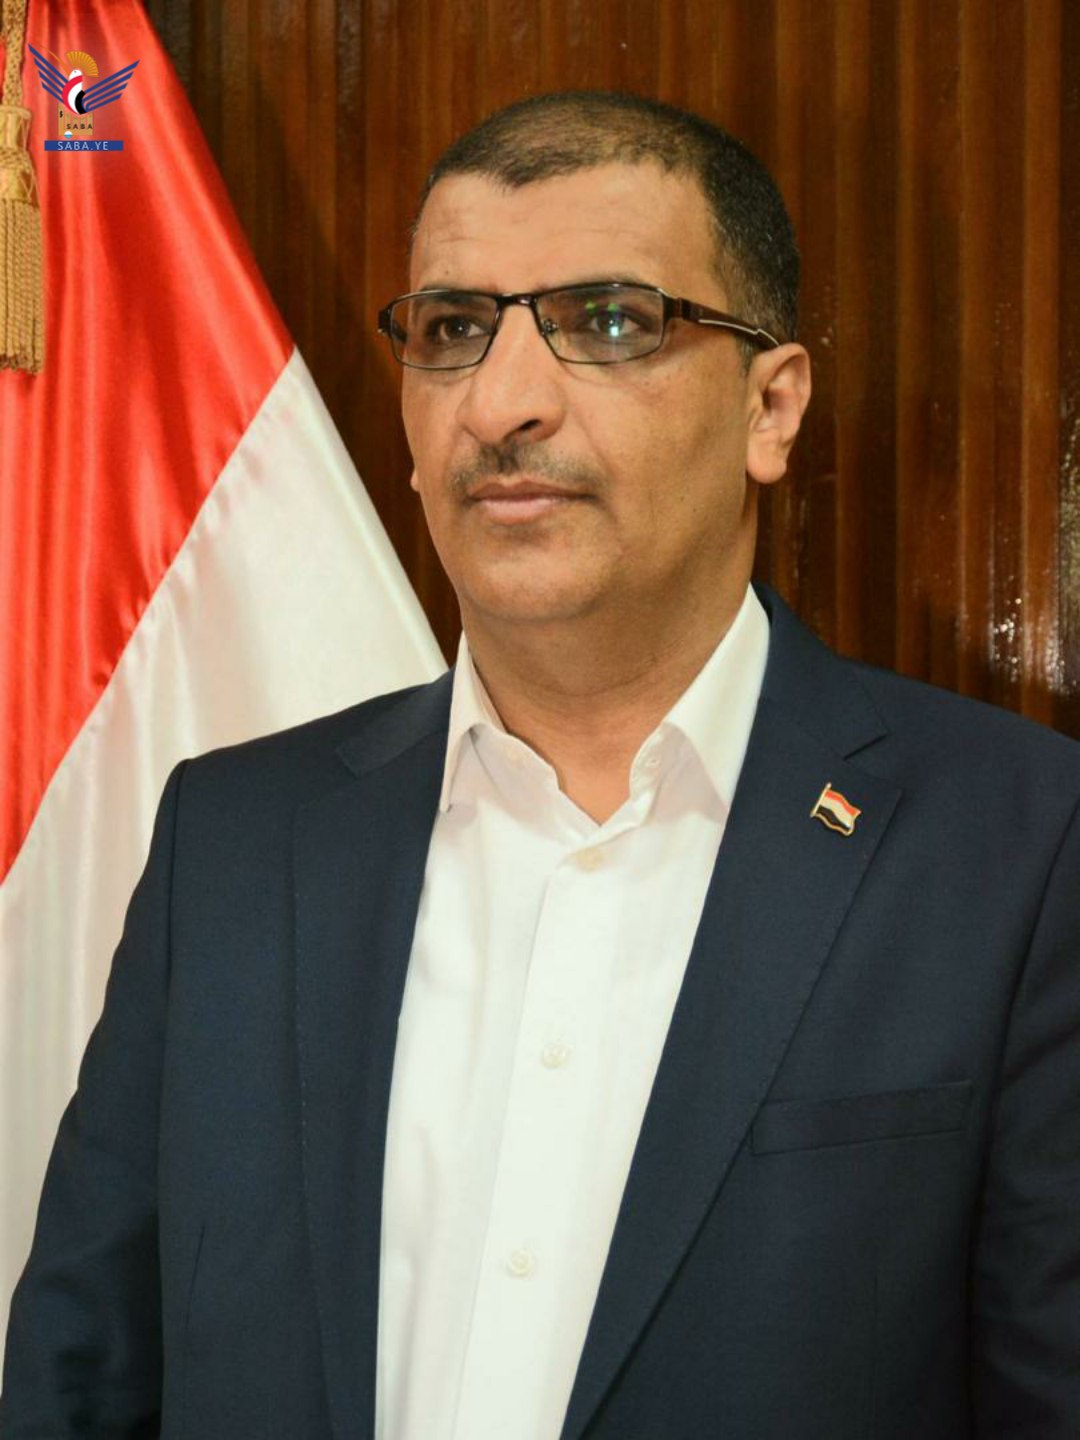 وزير الاتصالات يؤكد الاستعداد للتعاون مع سفن الكابلات للحصول على تصريح دخول المياه اليمنية